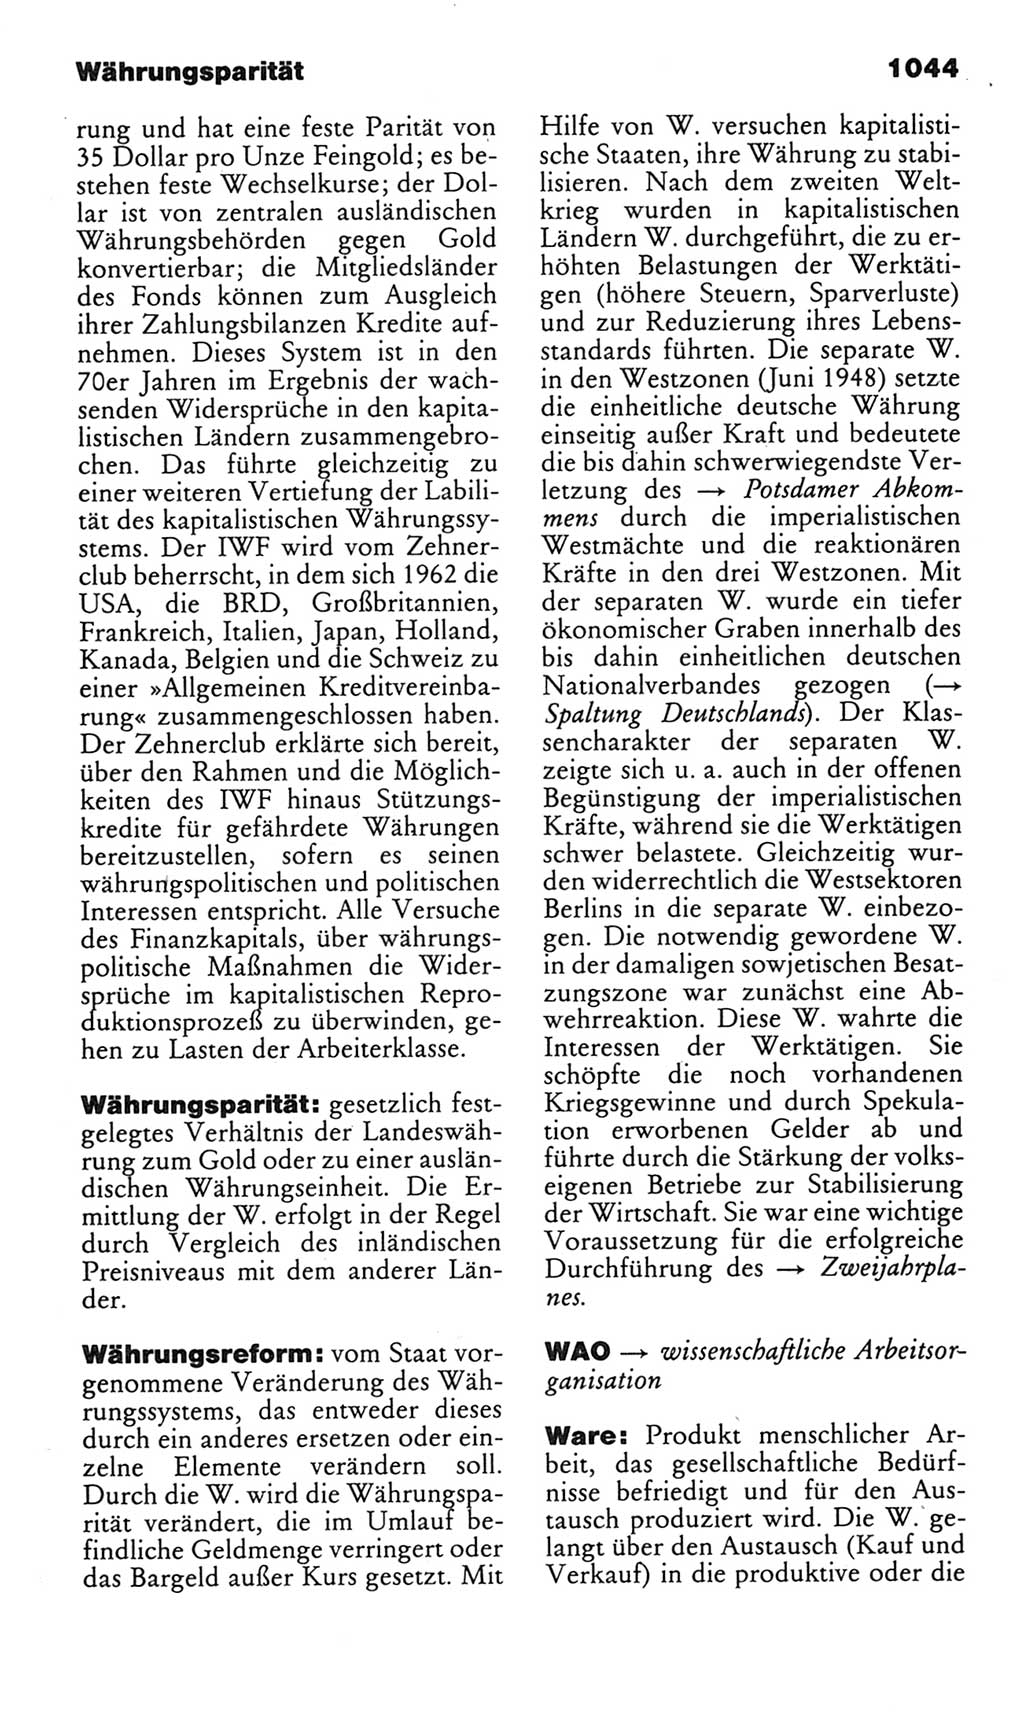 Kleines politisches Wörterbuch [Deutsche Demokratische Republik (DDR)] 1985, Seite 1044 (Kl. pol. Wb. DDR 1985, S. 1044)